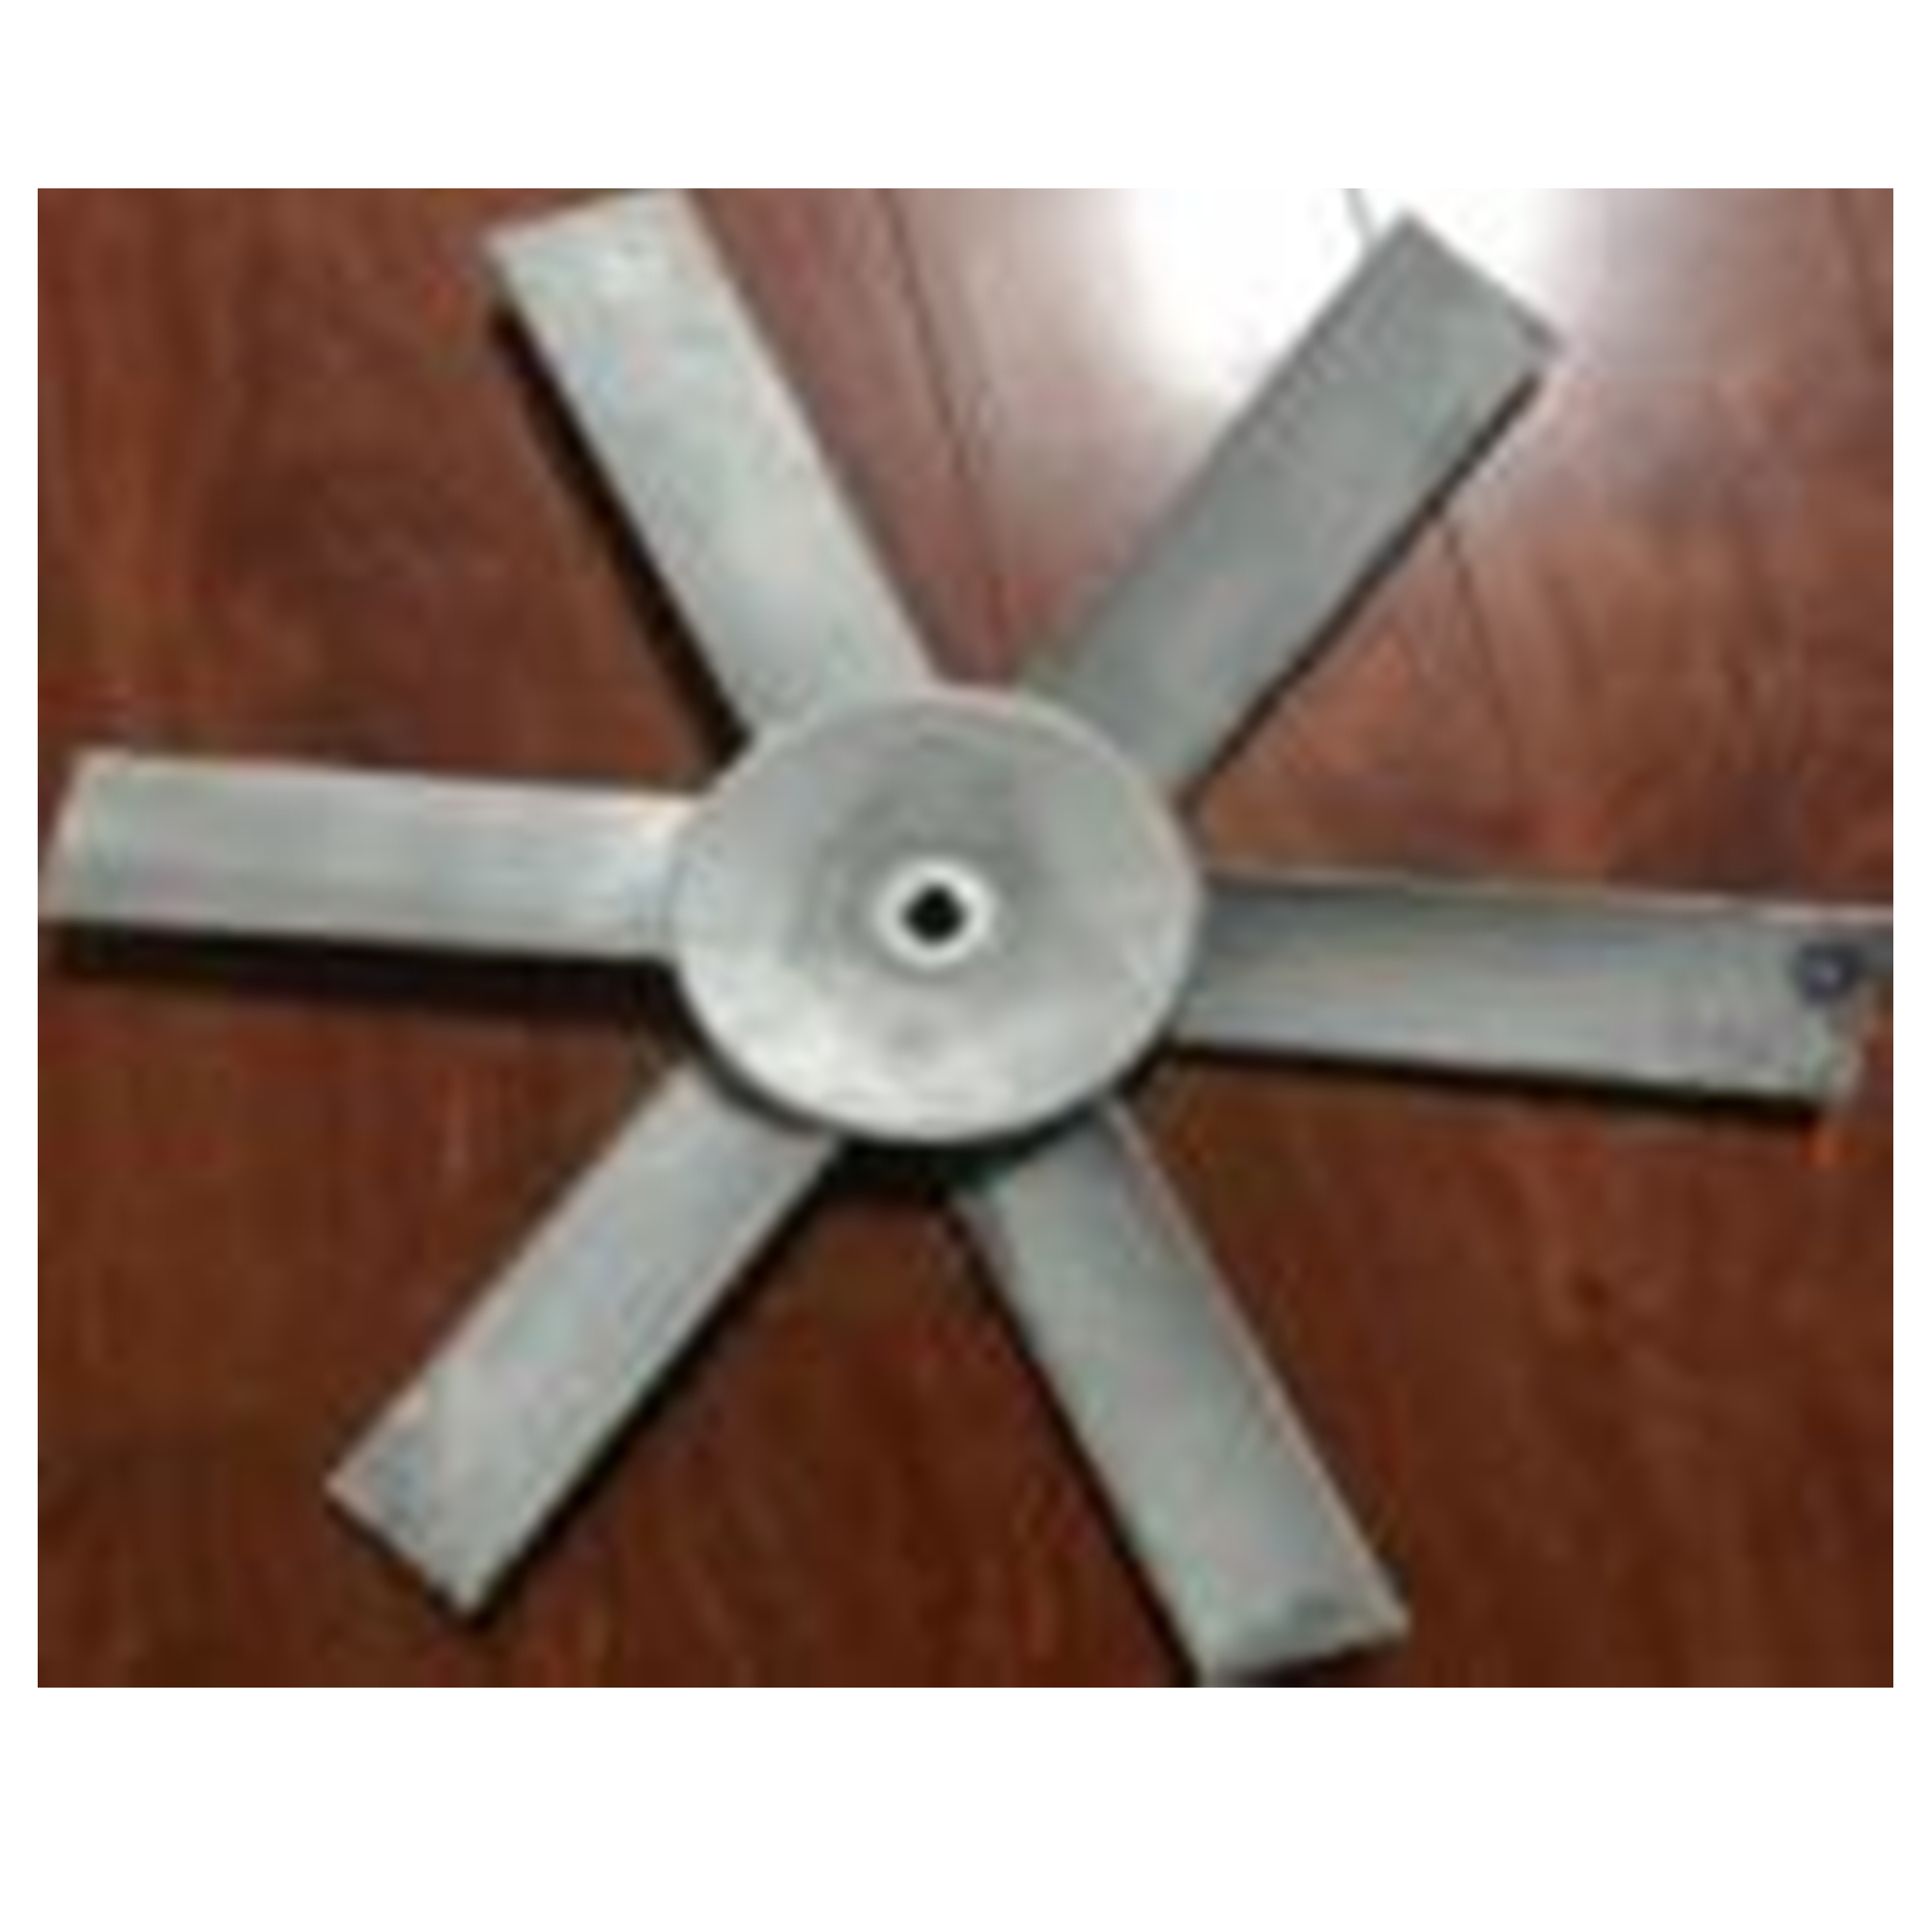 Deli rotorja aksialnega ventilatorja iz magnezijeve zlitine lopatica puhala Predstavljena slika